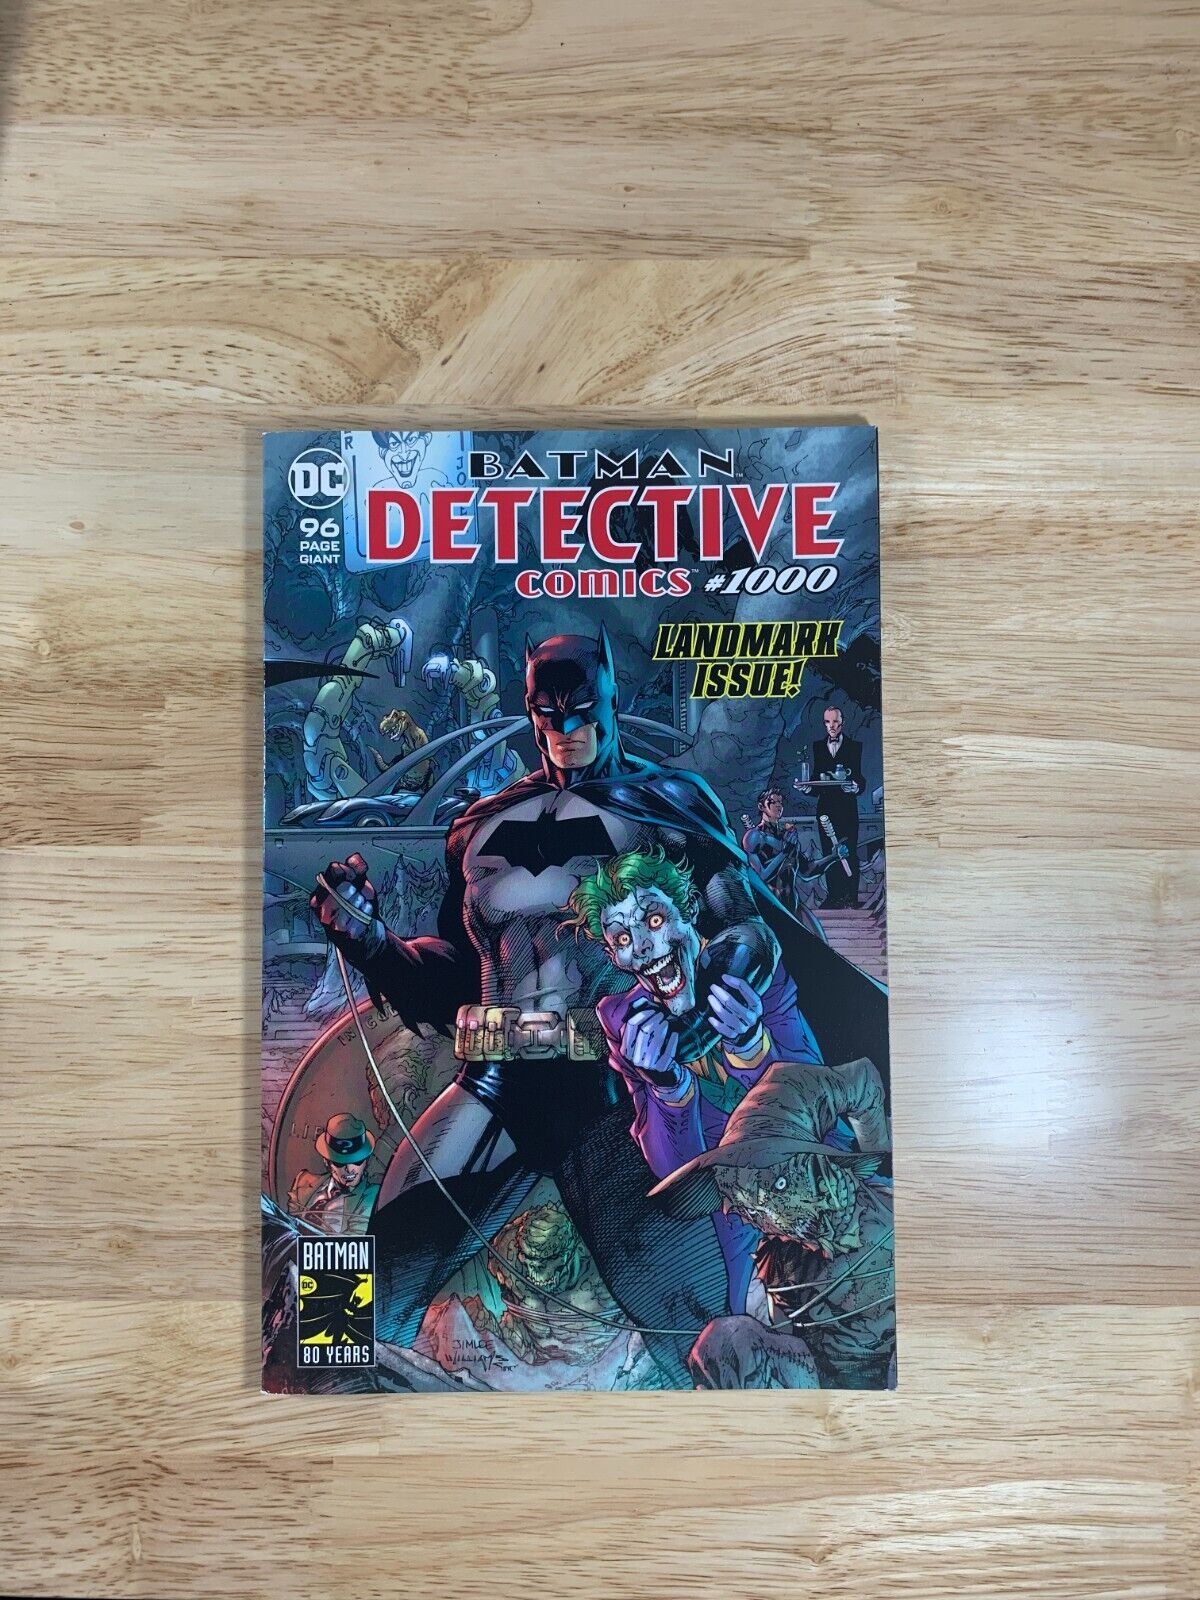 Batman Detective Comics #1000 Landmark Issue (DC Comics)